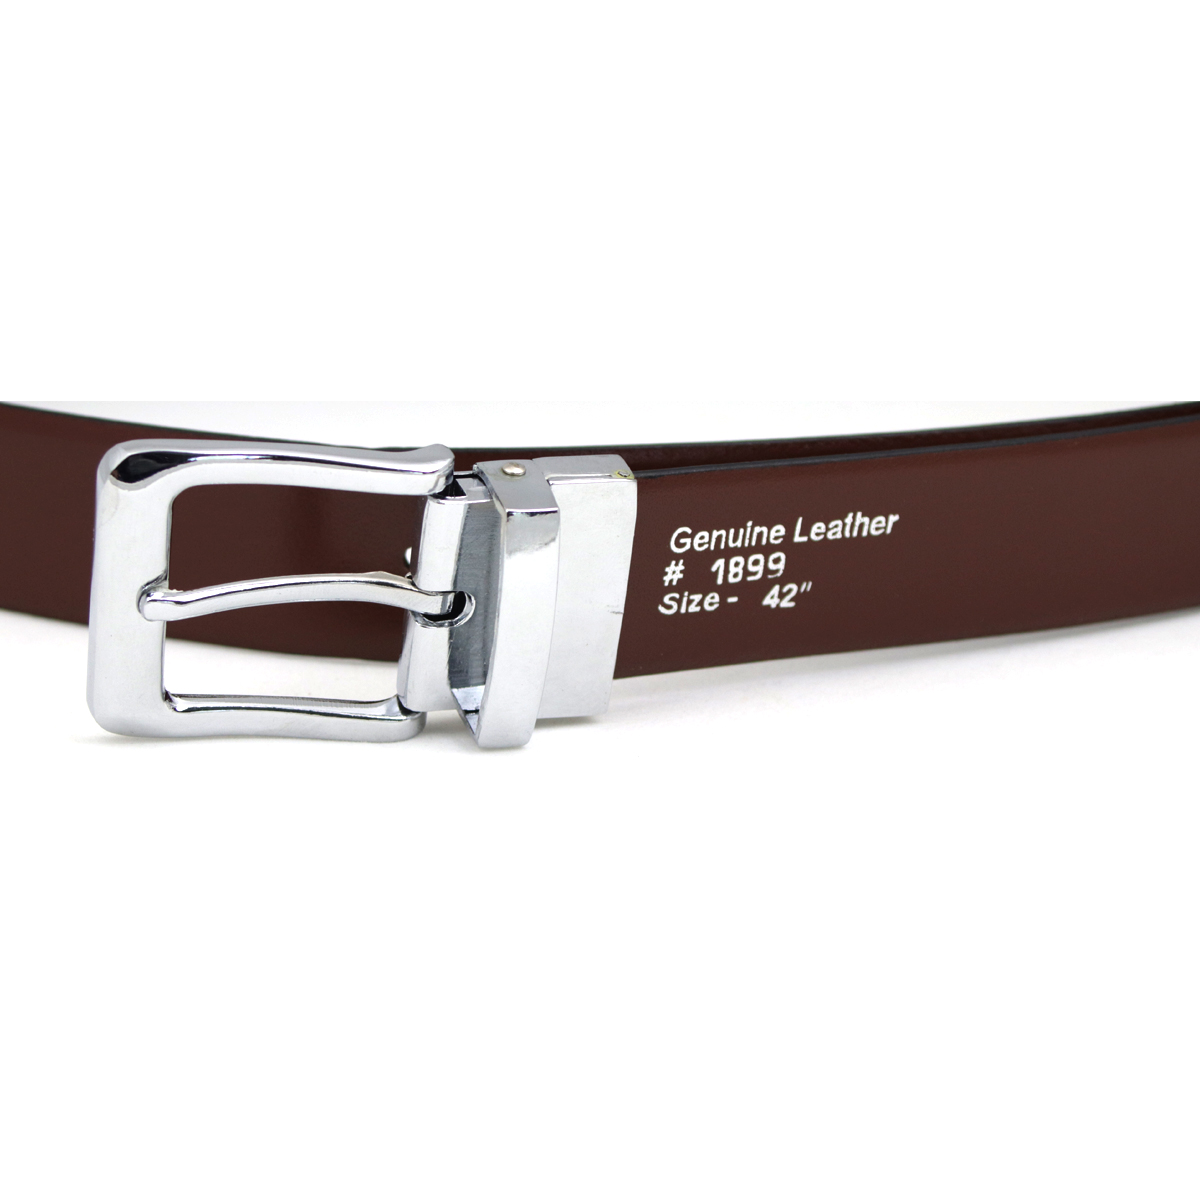 Men's belt, Reversible Leather Belt ,Dress Belt Genuine Leather